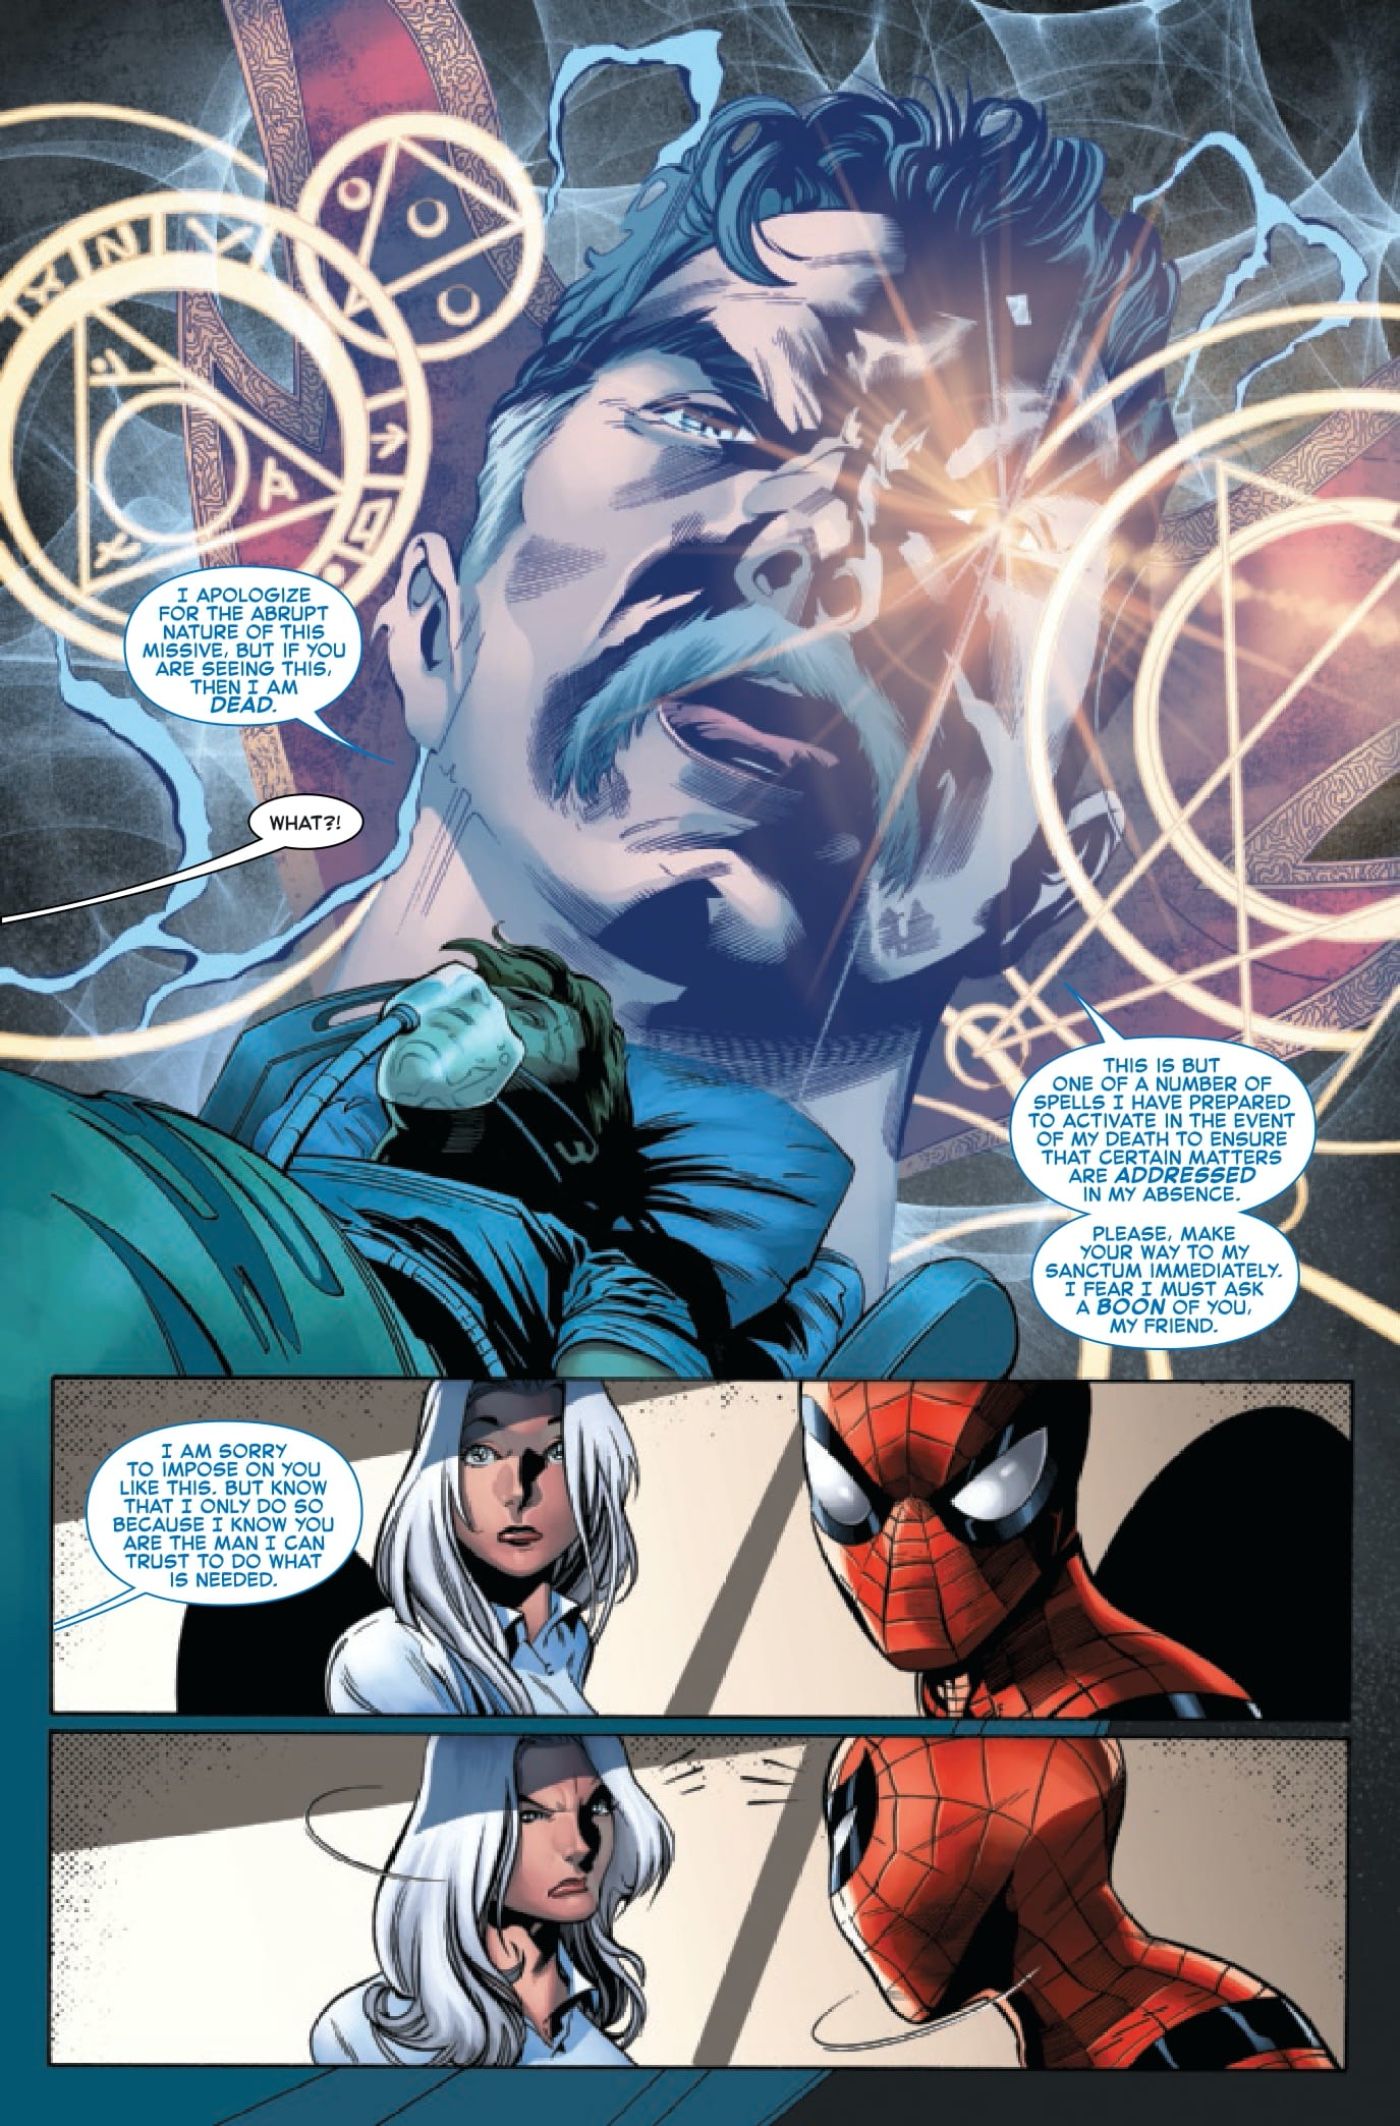 Doctor Strange interrupts Black Cat and Spider-Man's argument